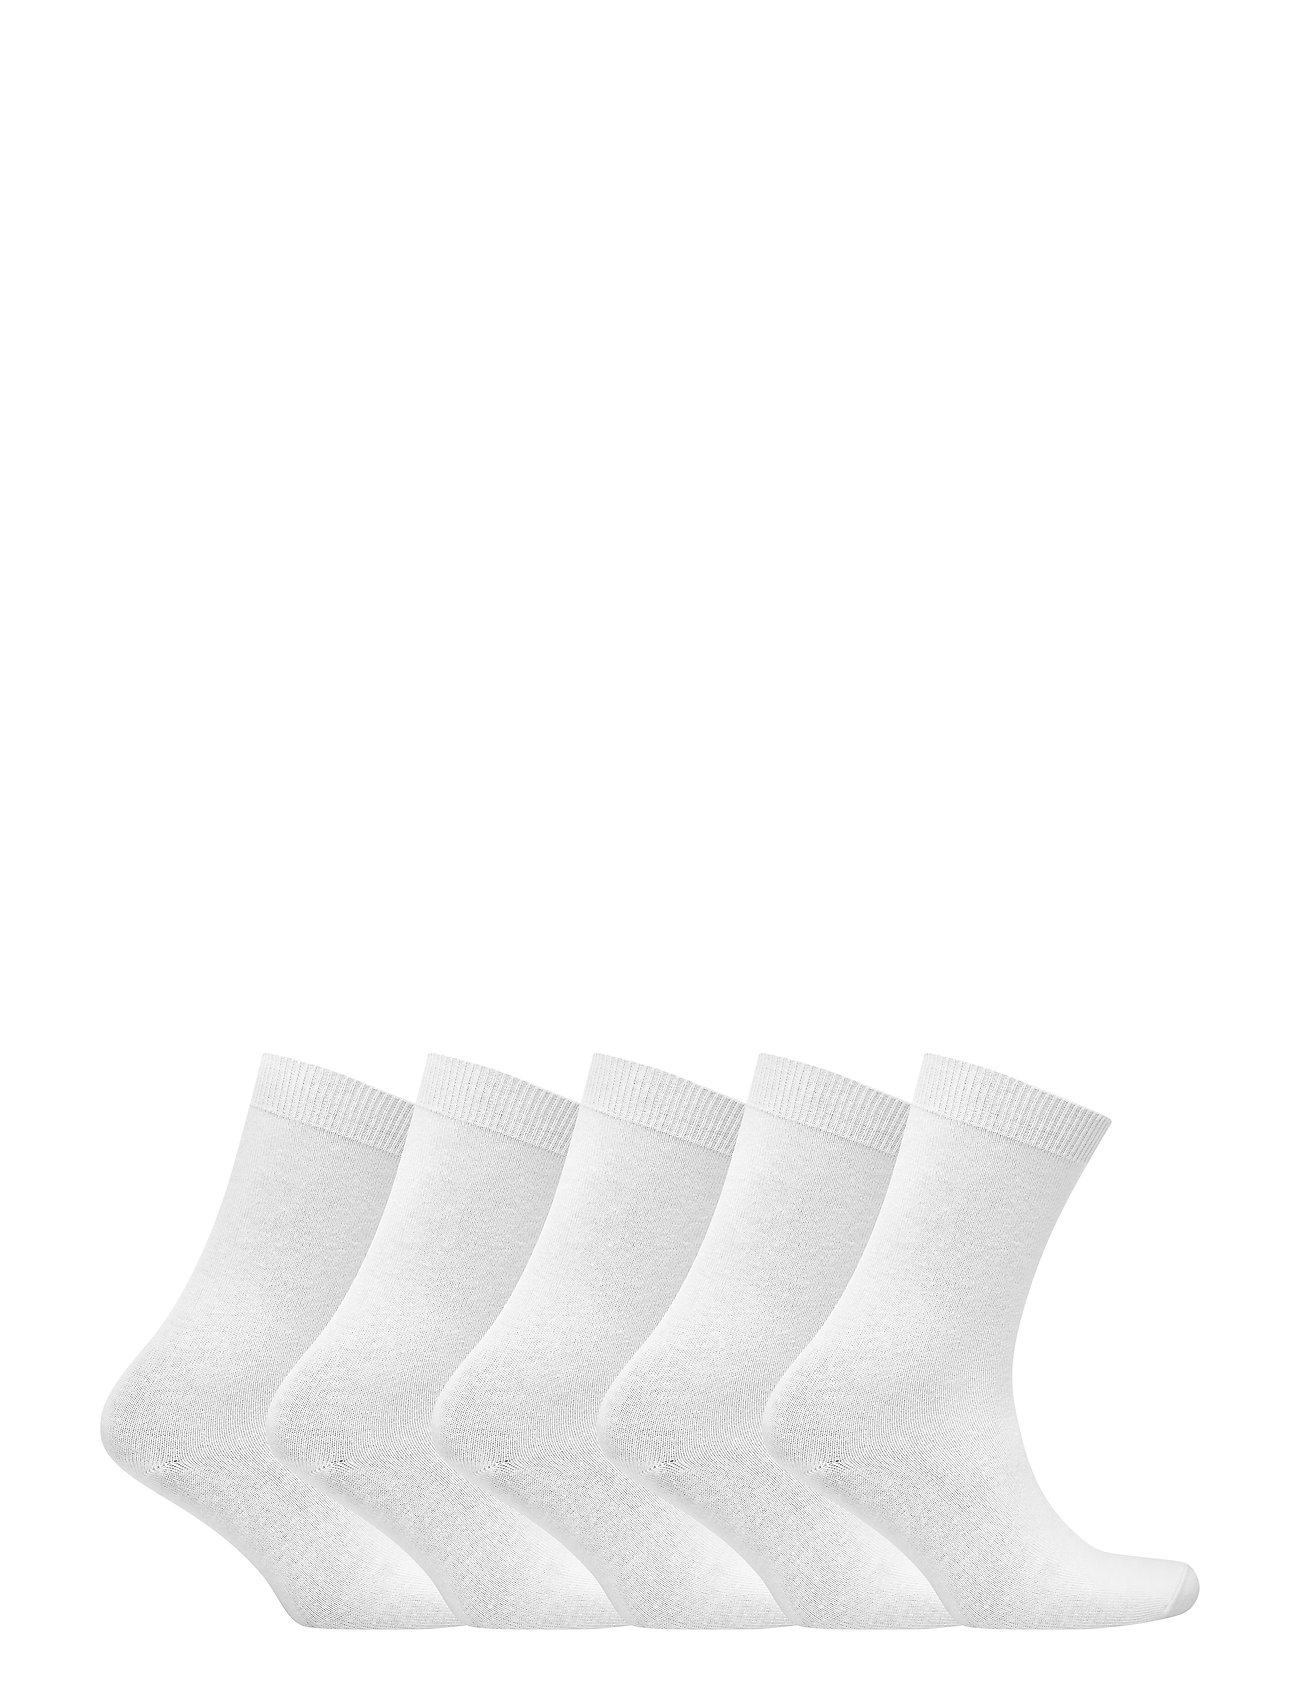 Decoy - DECOY ankle sock cotton 5-pk - lowest prices - vit - 1